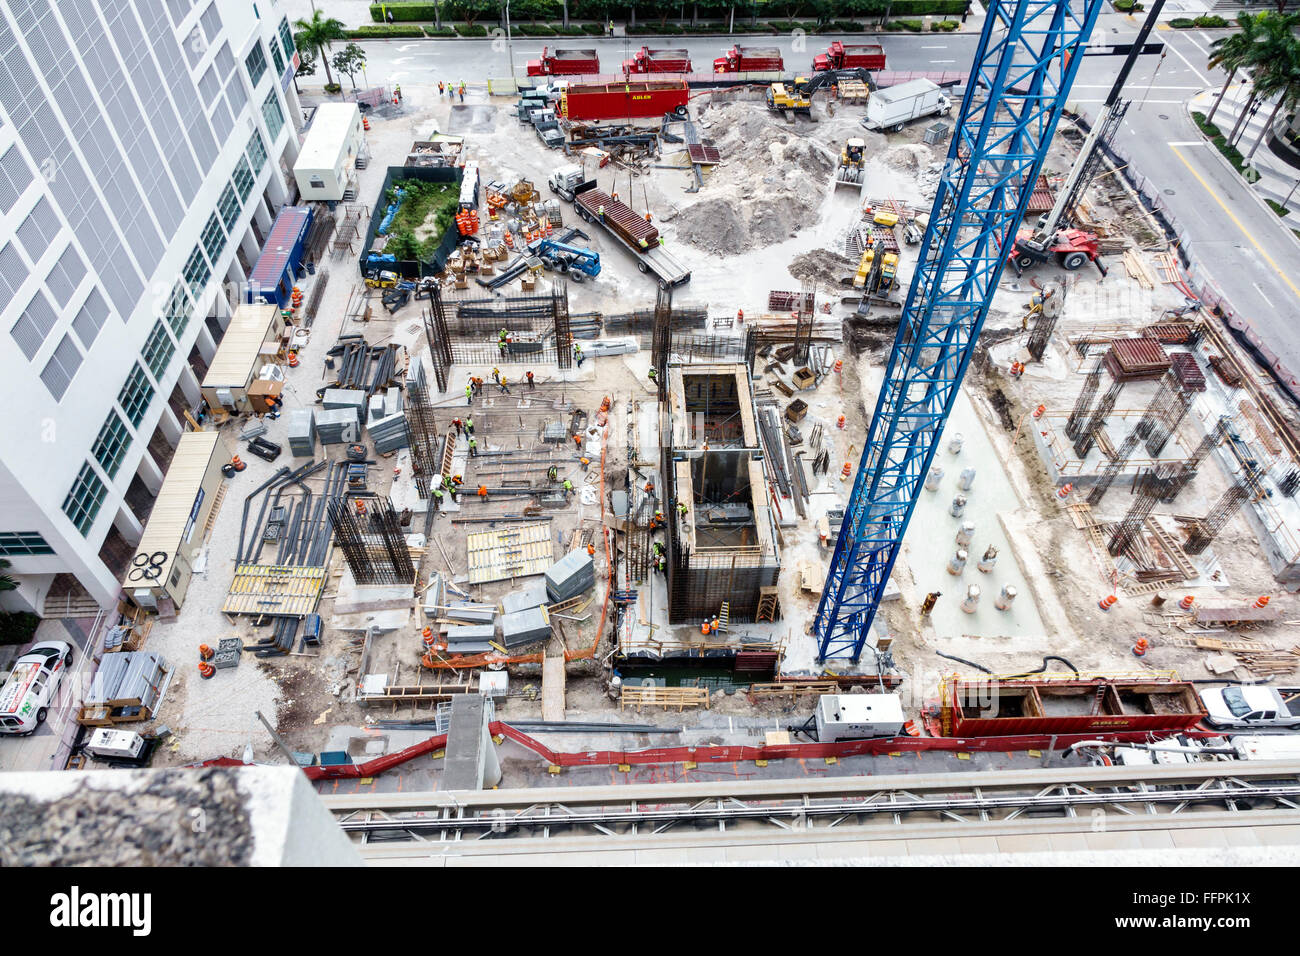 Floride Sud, Miami, centre-ville, nouveau chantier de construction, vue aérienne de dessus, fondation, vue aérienne, FL151207003 Banque D'Images